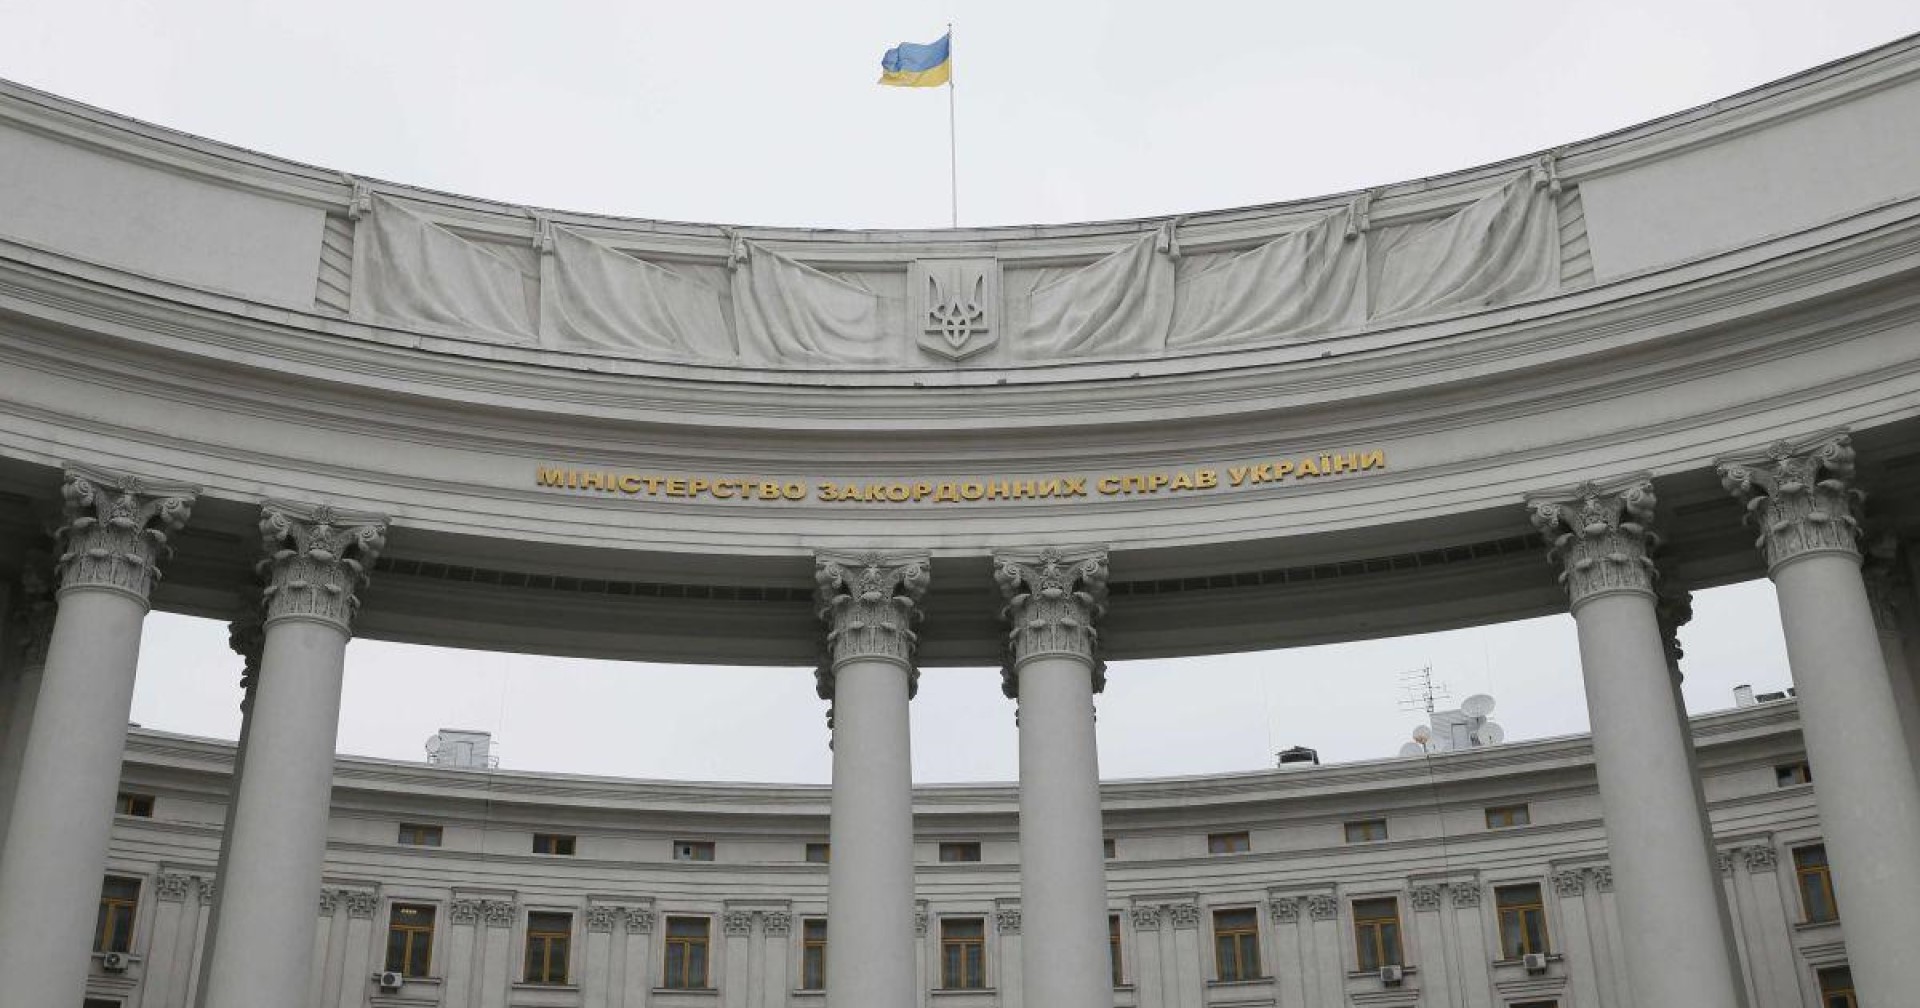 กต.ยูเครนเสริมความร่วมมือกับต่างประเทศในด้านไซเบอร์ หลังเว็บไซต์กระทรวงล่ม